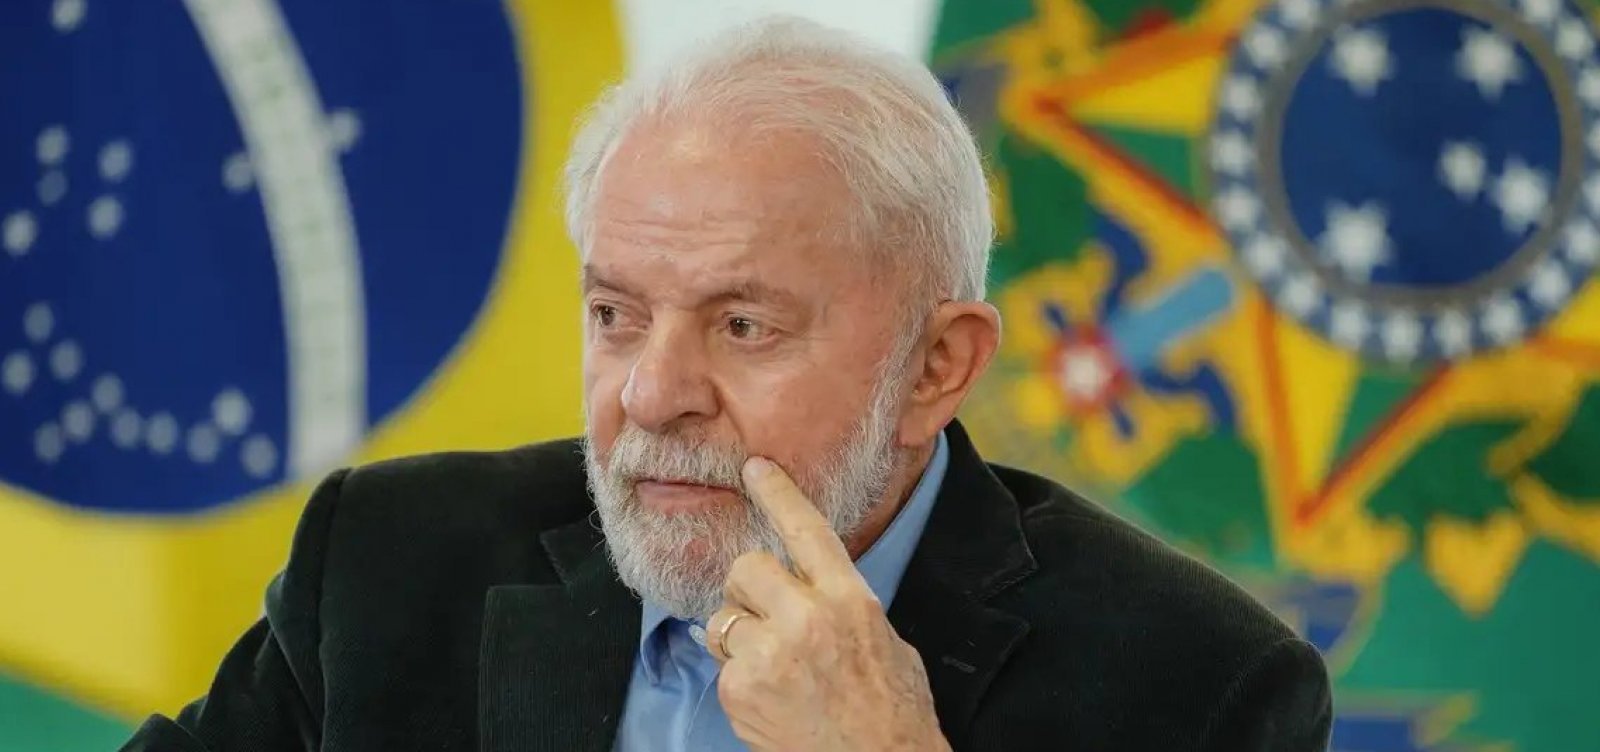 Lula diz ter ficado “nervoso” com preço elevado do arroz em supermercados